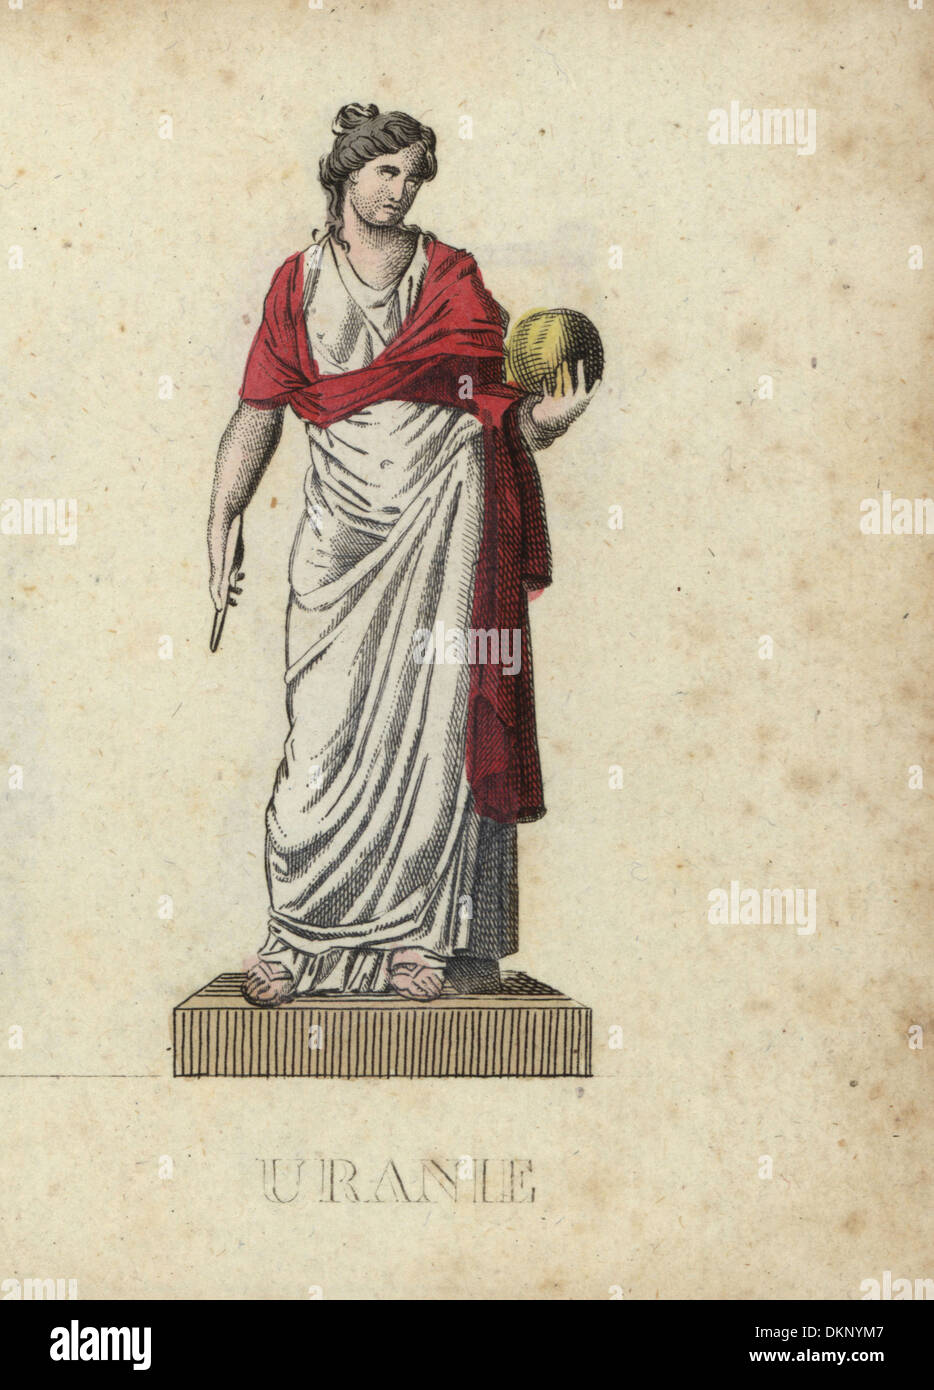 Urania, griechische muse der Astronomie, mit Globus und Kompass. Stockfoto